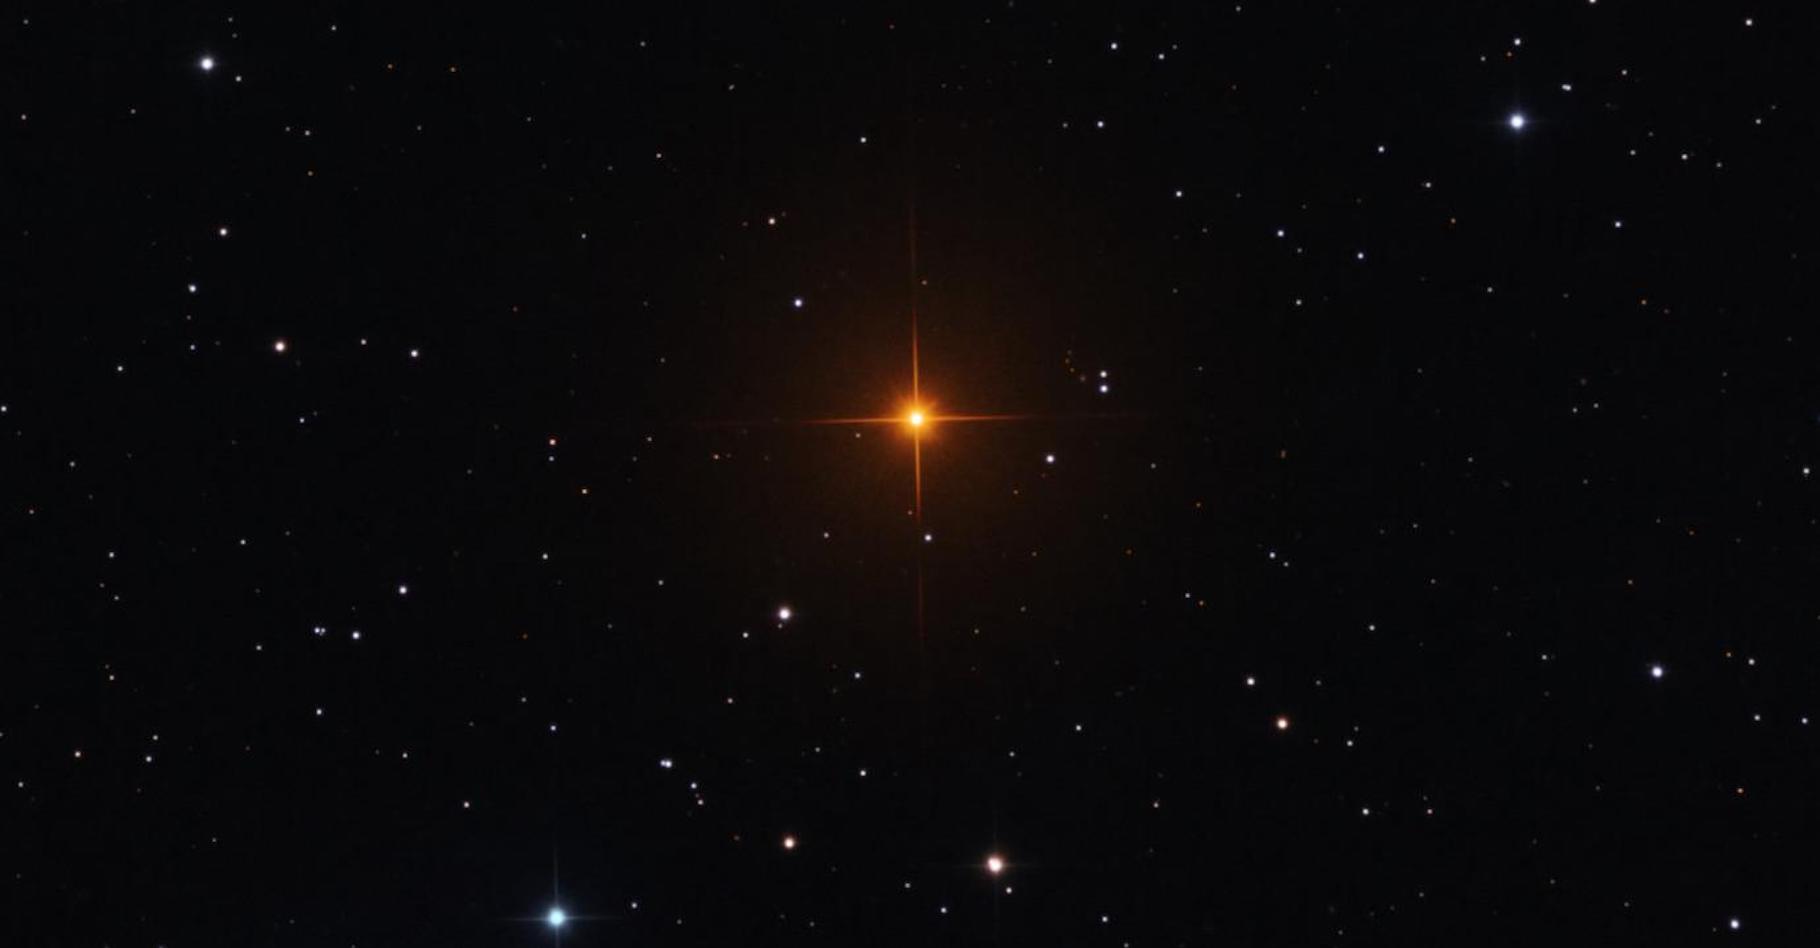 R Leporis, cette étoile rouge orangé brillante capturée ici est un exemple du type d’étoiles situées dans la branche asymptotique des géantes qui intéressent les astronomes de l’université de Chicago (États-Unis). La couleur frappante vient de la grande quantité de carbone dans son atmosphère. © Université de Chicago